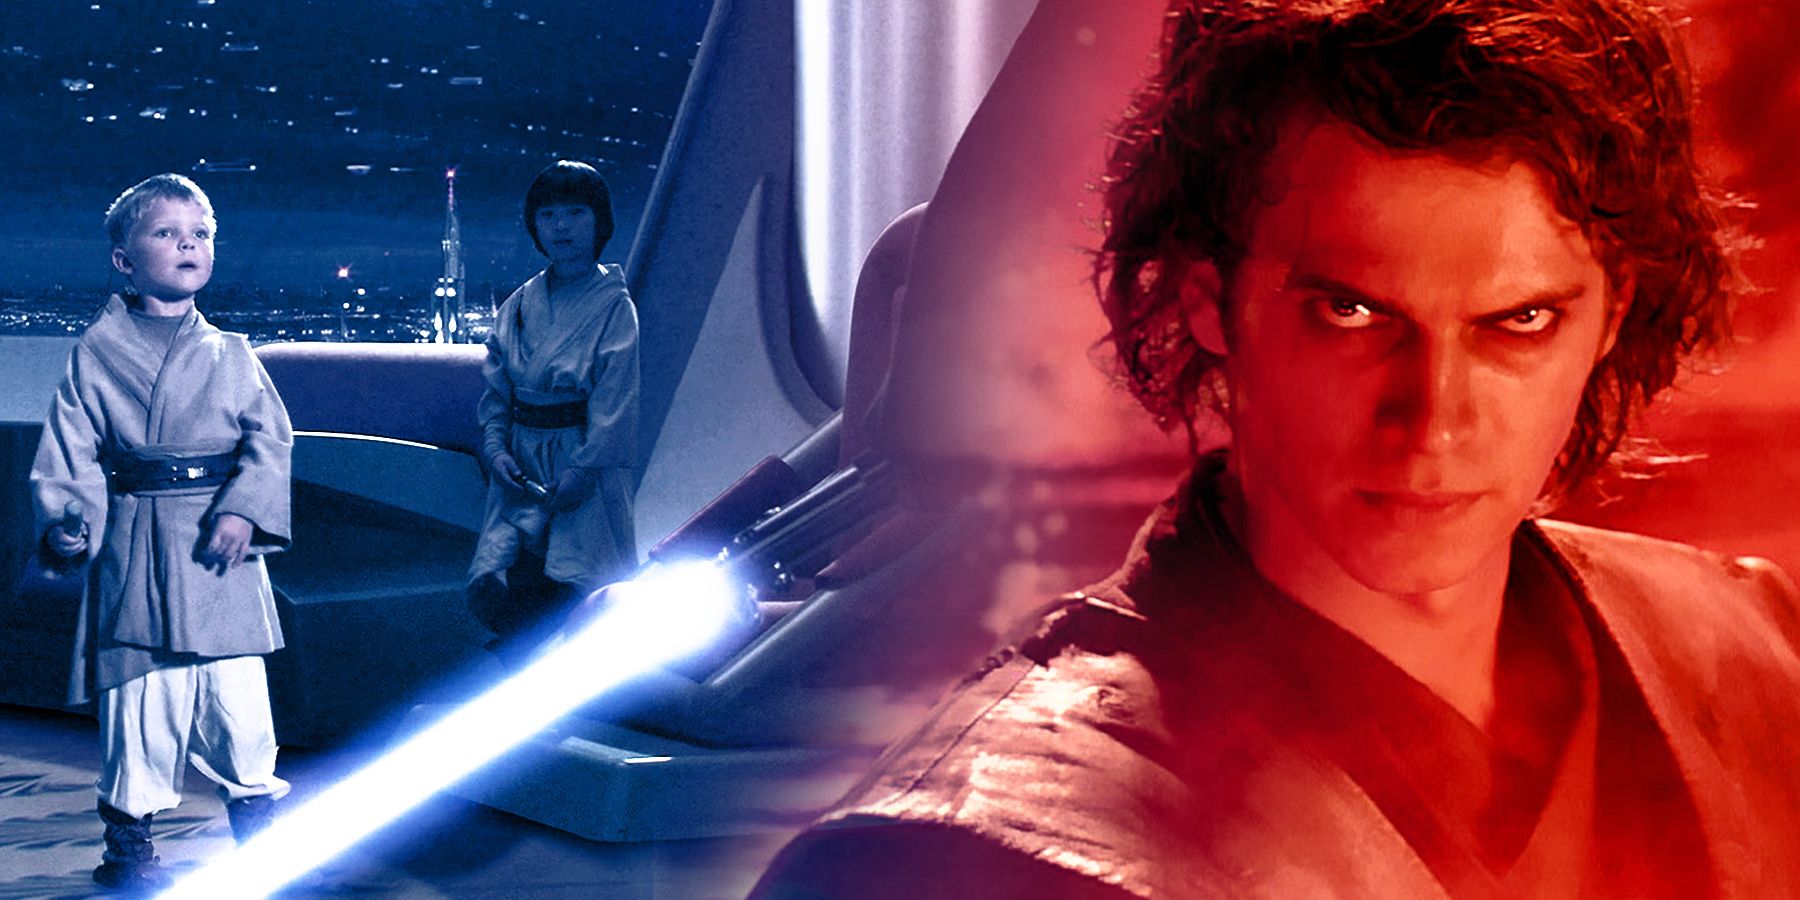 Tại sao thanh kiếm ánh sáng của Anakin không chuyển sang màu đỏ sau khi anh ta giết chết những đứa trẻ